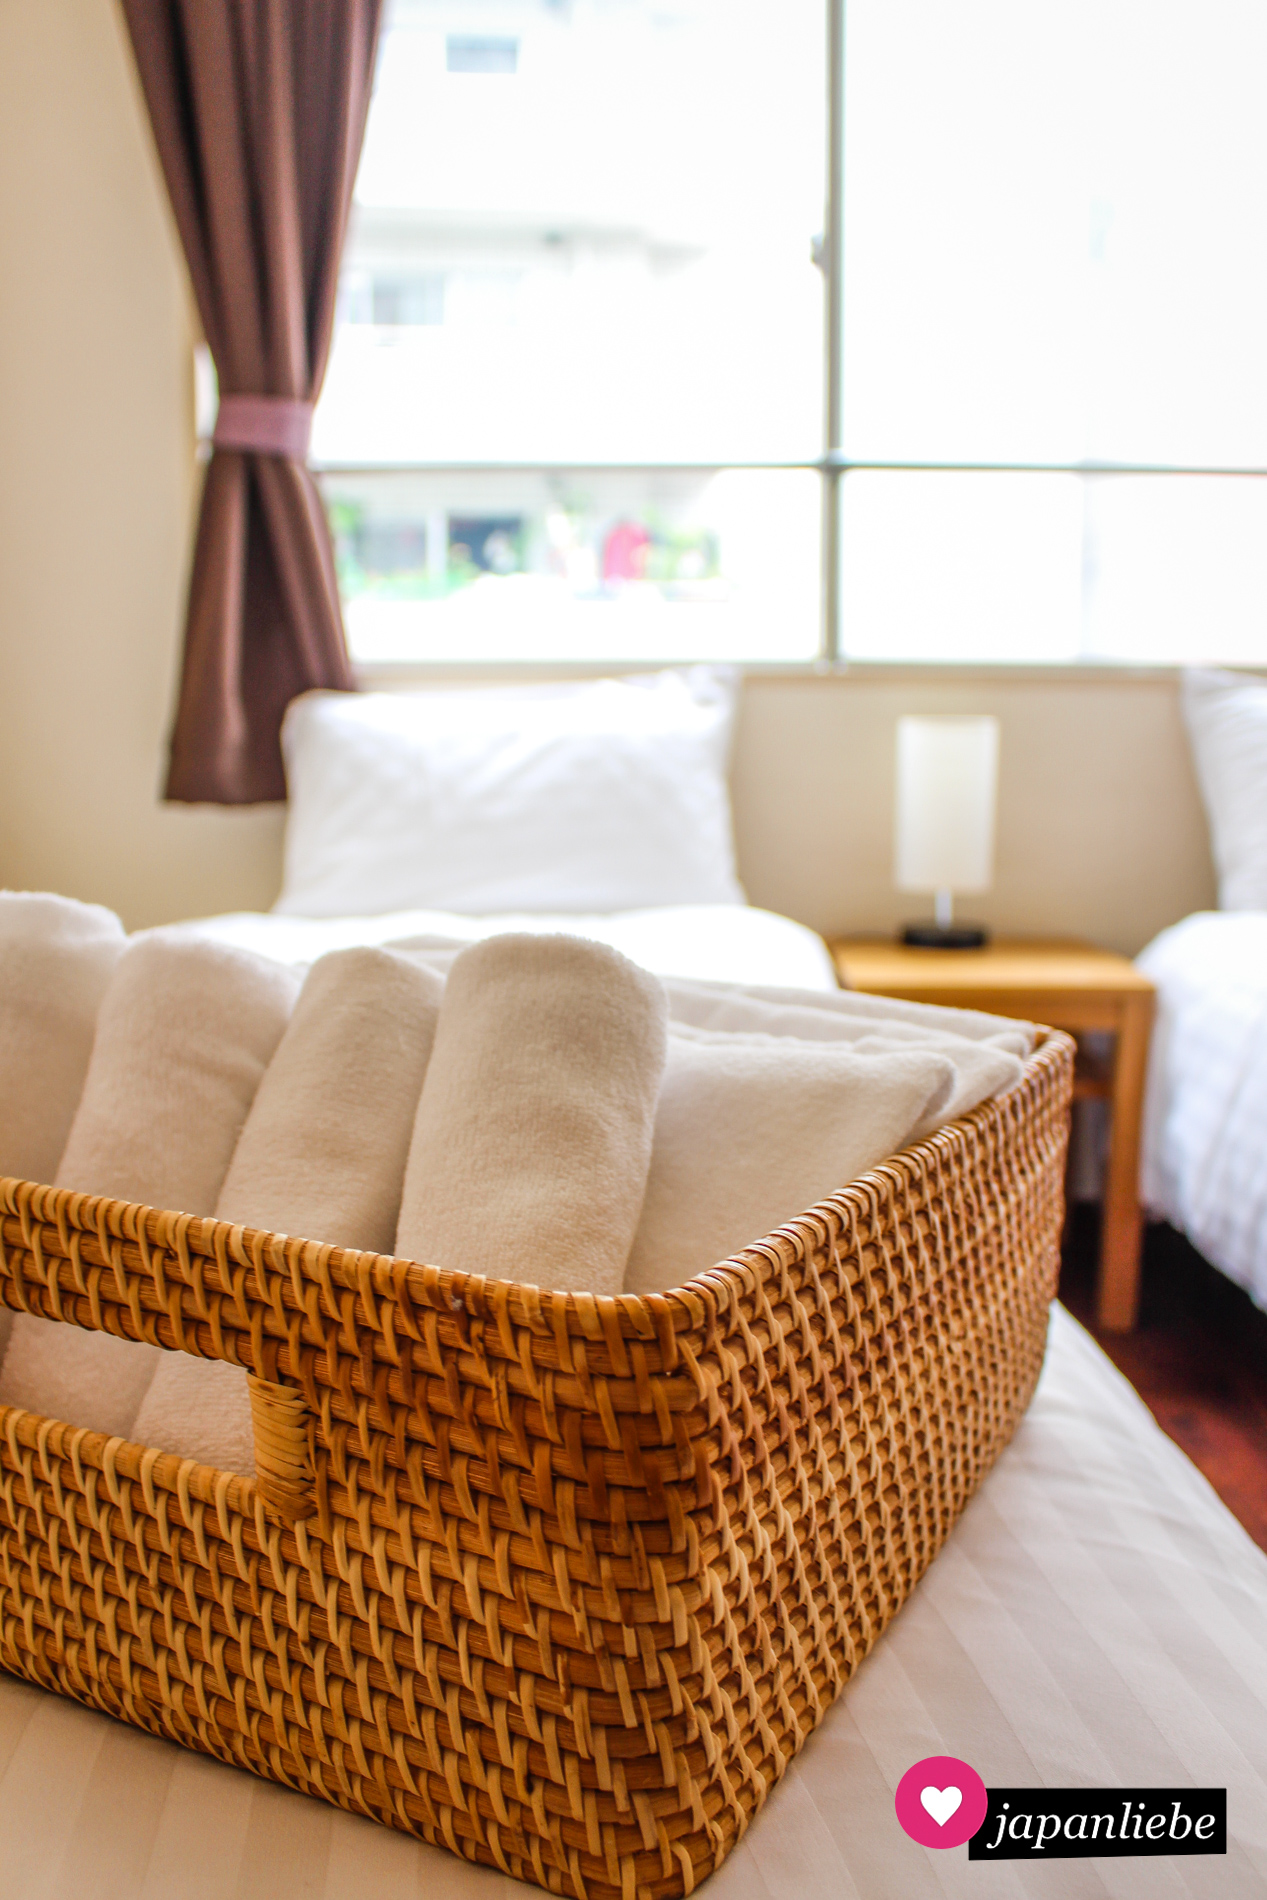 In den Ferienwohnungen von Japan Experience war alles vorhanden, was ich brauchte, vom Handtuch bis zum Reiskocher. Auch konnte ich zwischen westlichen Betten und "futon" zum Schlafen wählen.